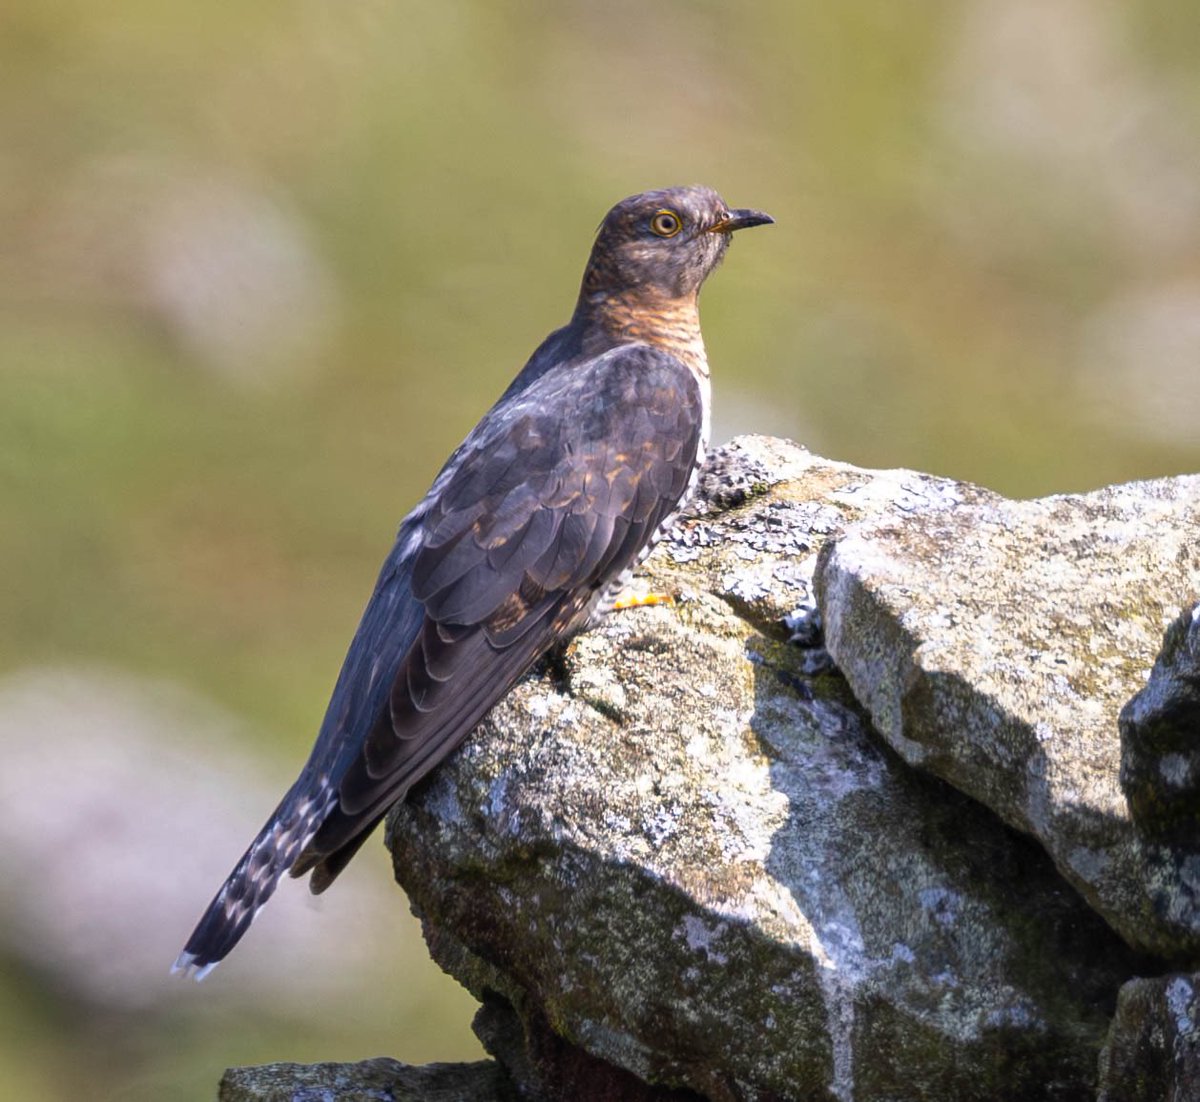 Male and female cuckoo’s